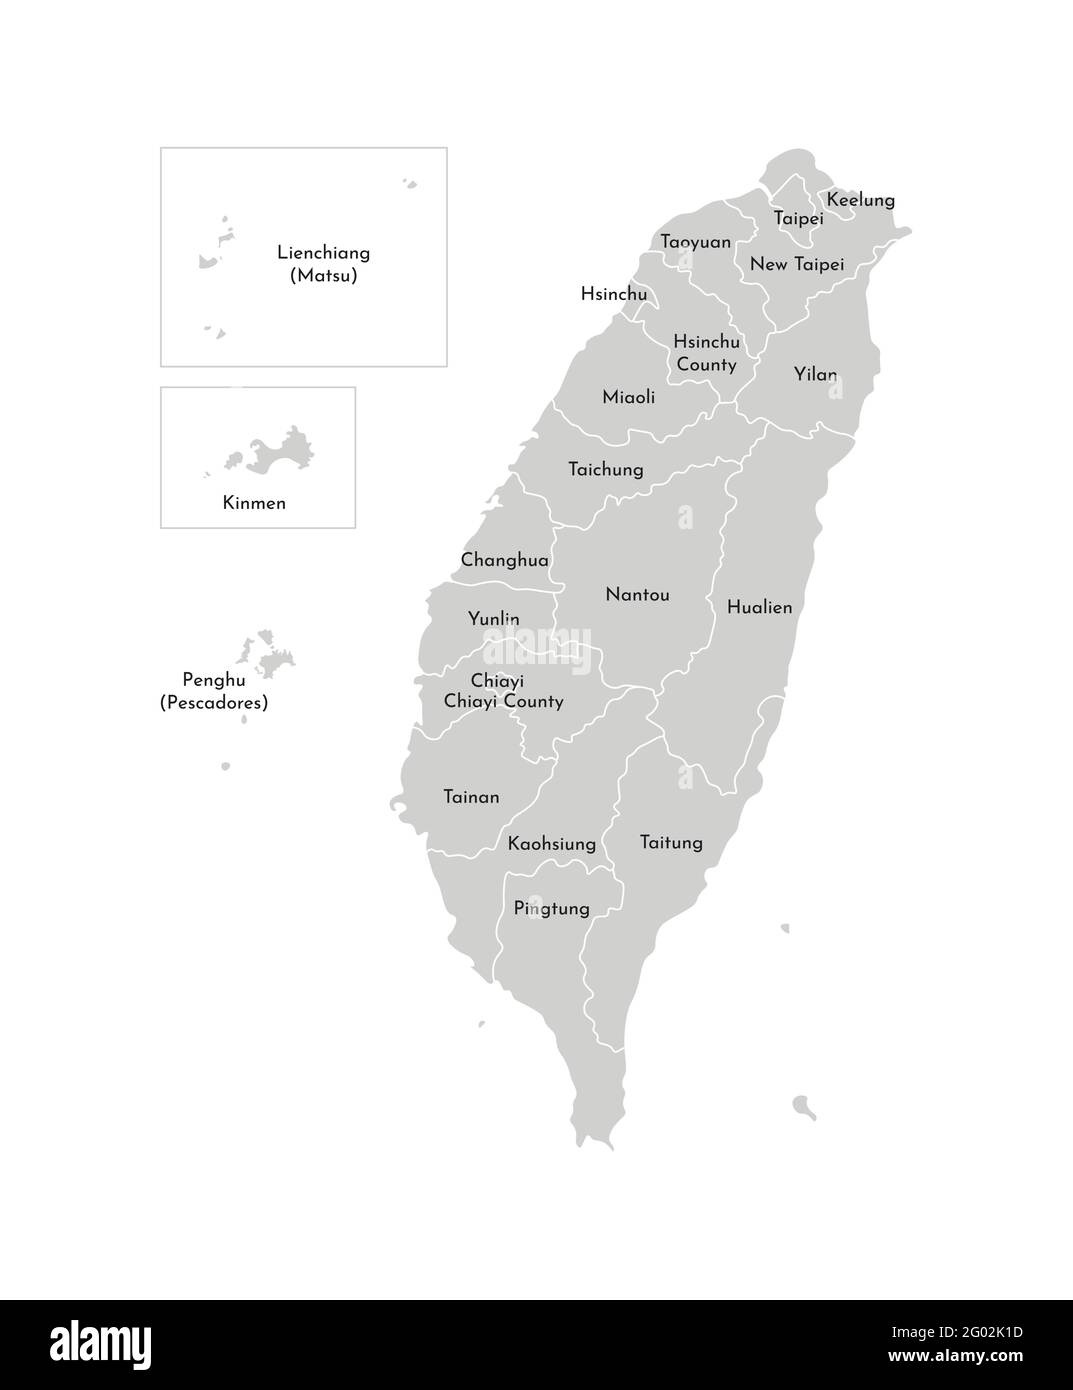 Vektor isolierte Illustration der vereinfachten Verwaltungskarte von Taiwan, Republik China (ROC). Grenzen und Namen der Provinzen (Regionen). Grau s Stock Vektor